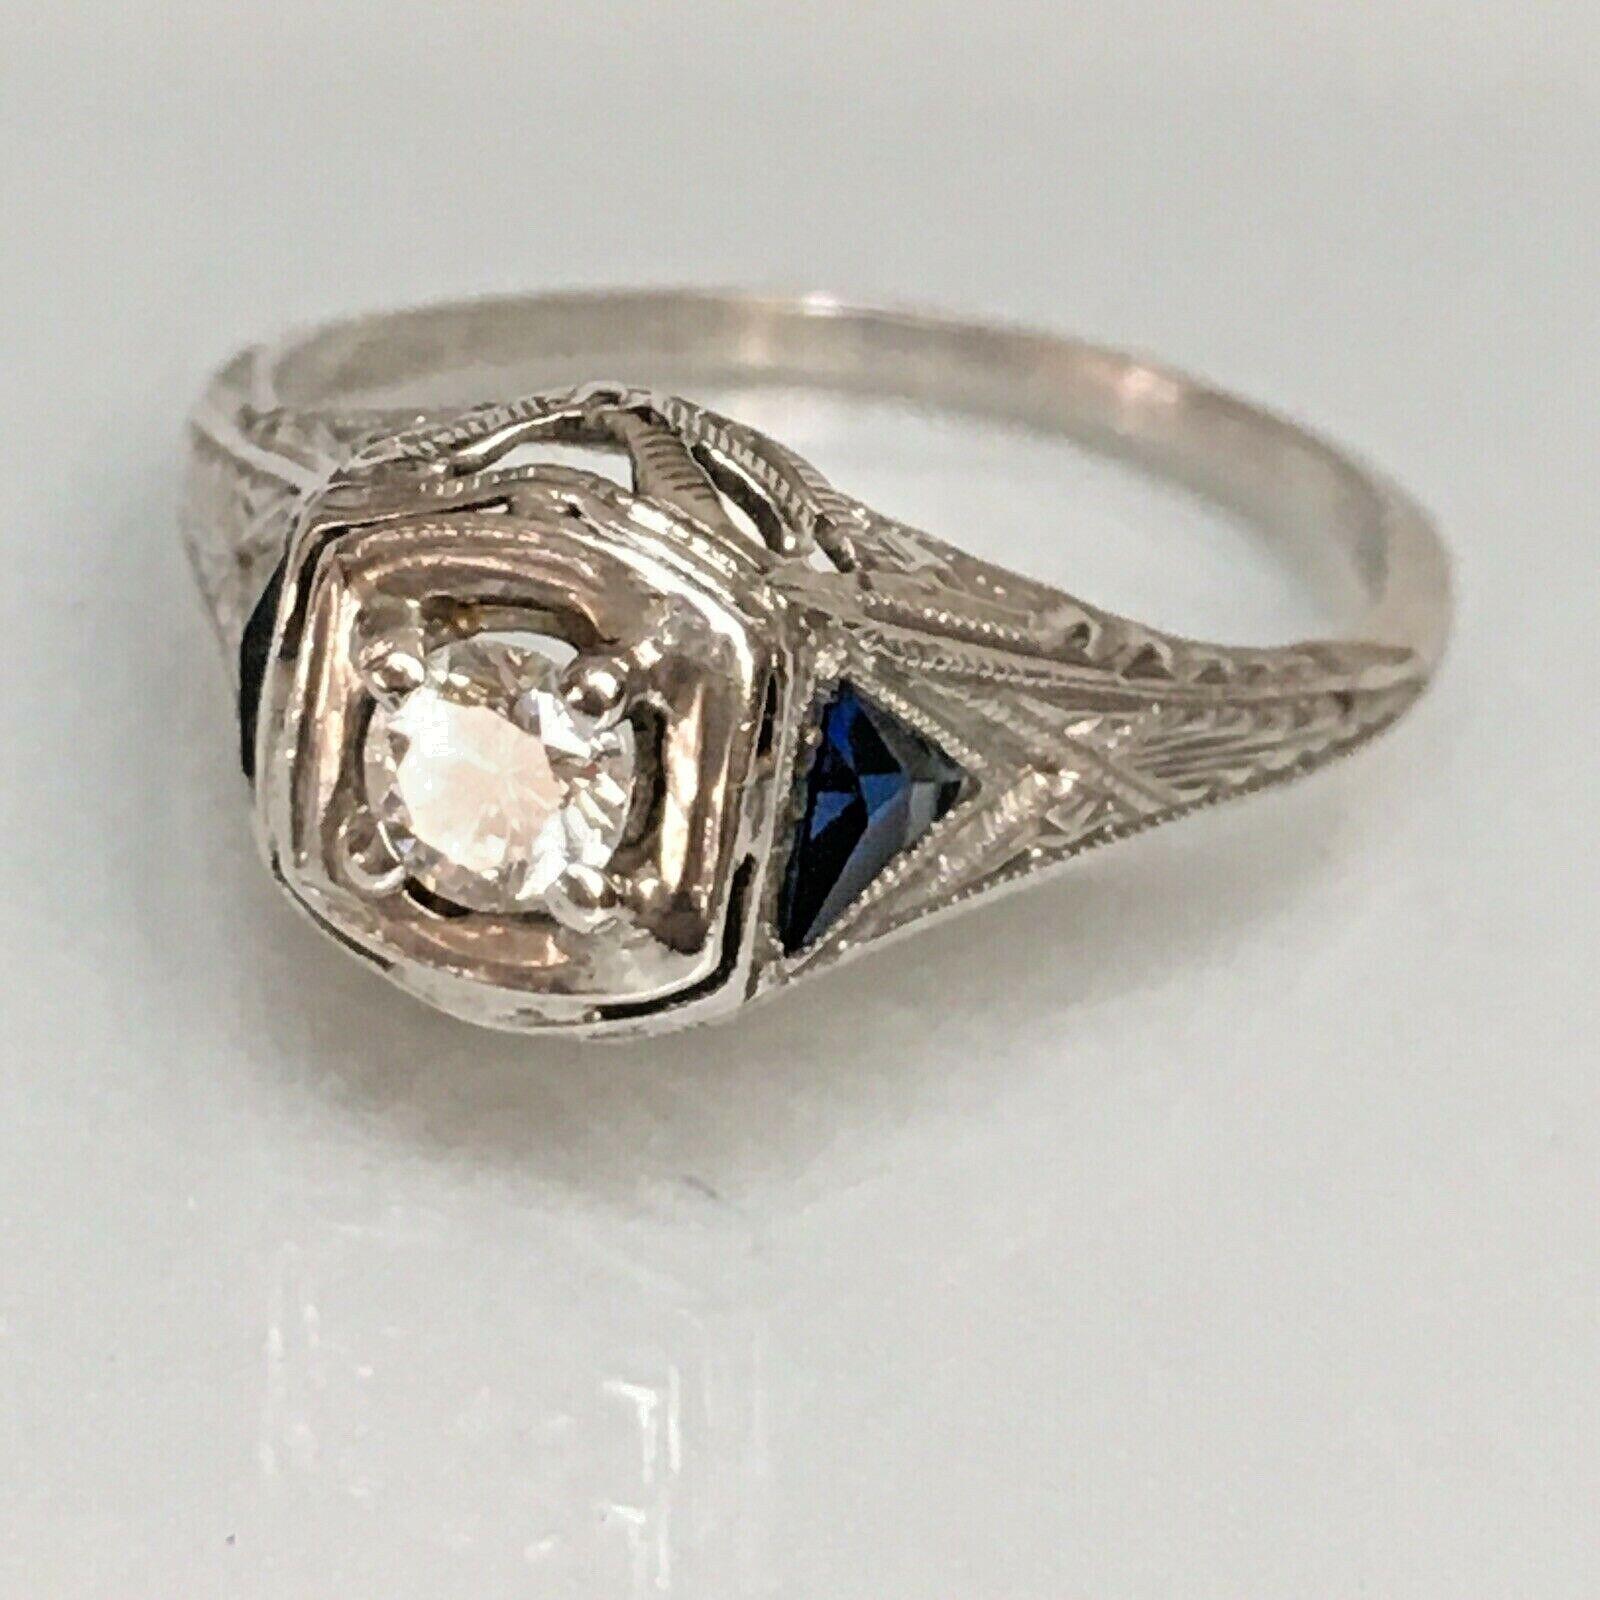 Certified 1920s Artdeco Platinum 1/6 Carat Diamond Sapphire Ring American
Travail en filigrane
Taille du doigt 4.75
Certifié
En excellent état compte tenu de l'âge, certifié, voir photos.

Authentique antiquité américaine de 100 ans
Bague Art Déco